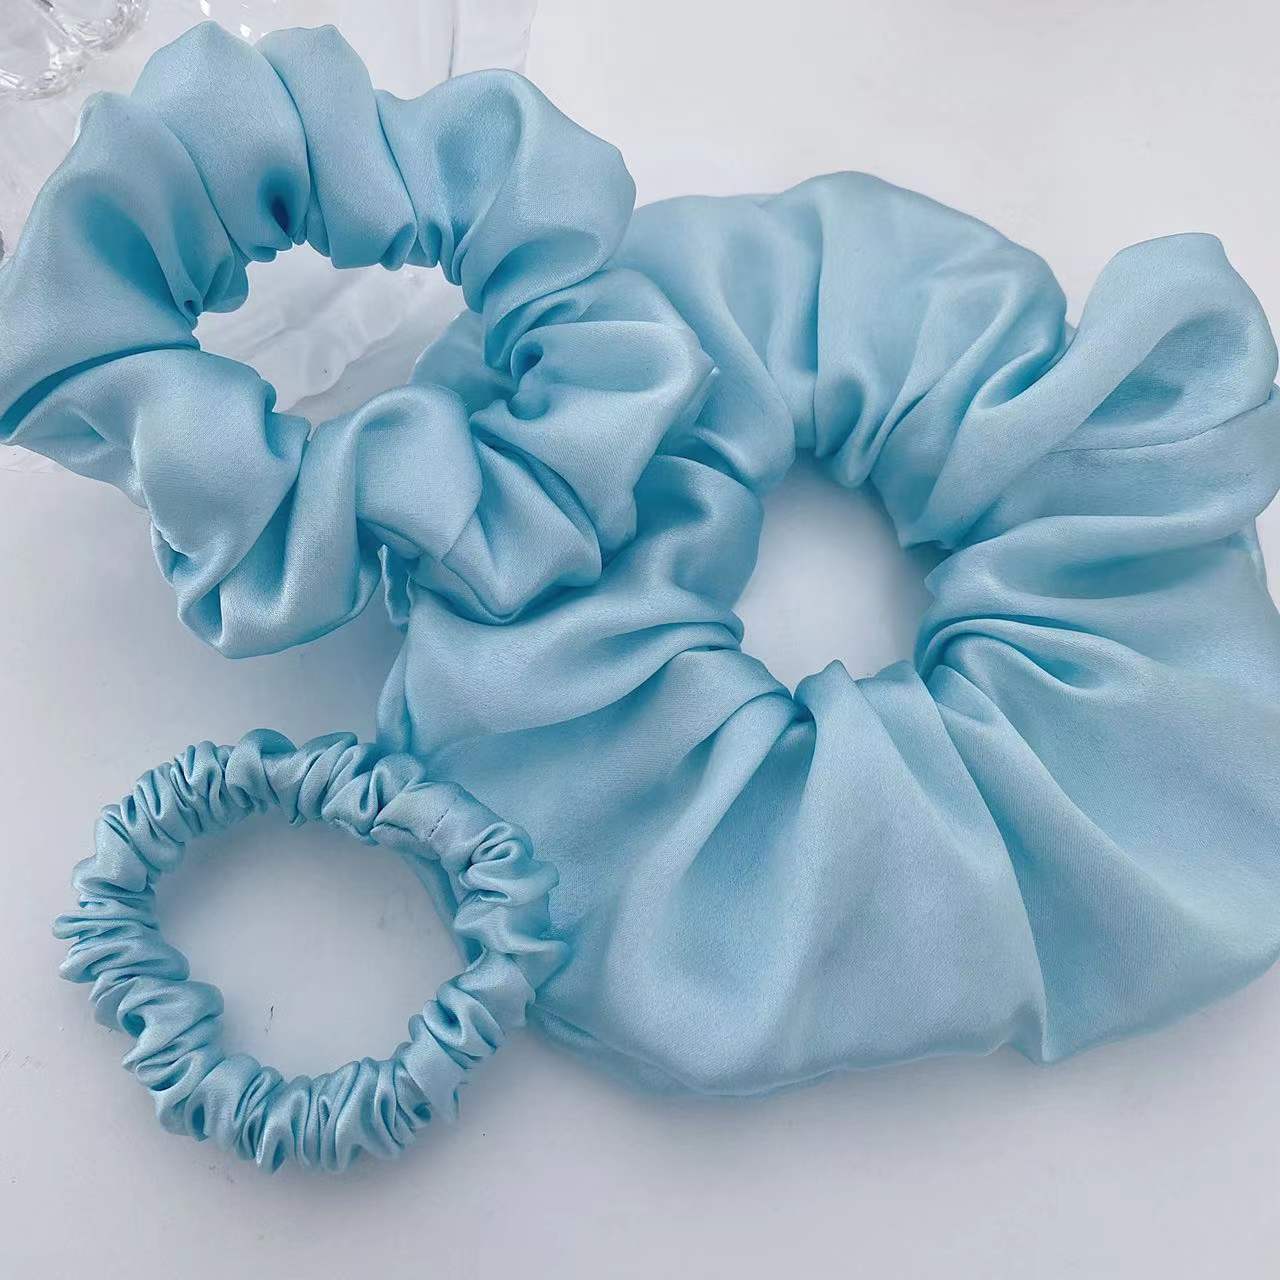 Silk Scrunchies Designer Priljubljena barvna čista svila za nego las 主图